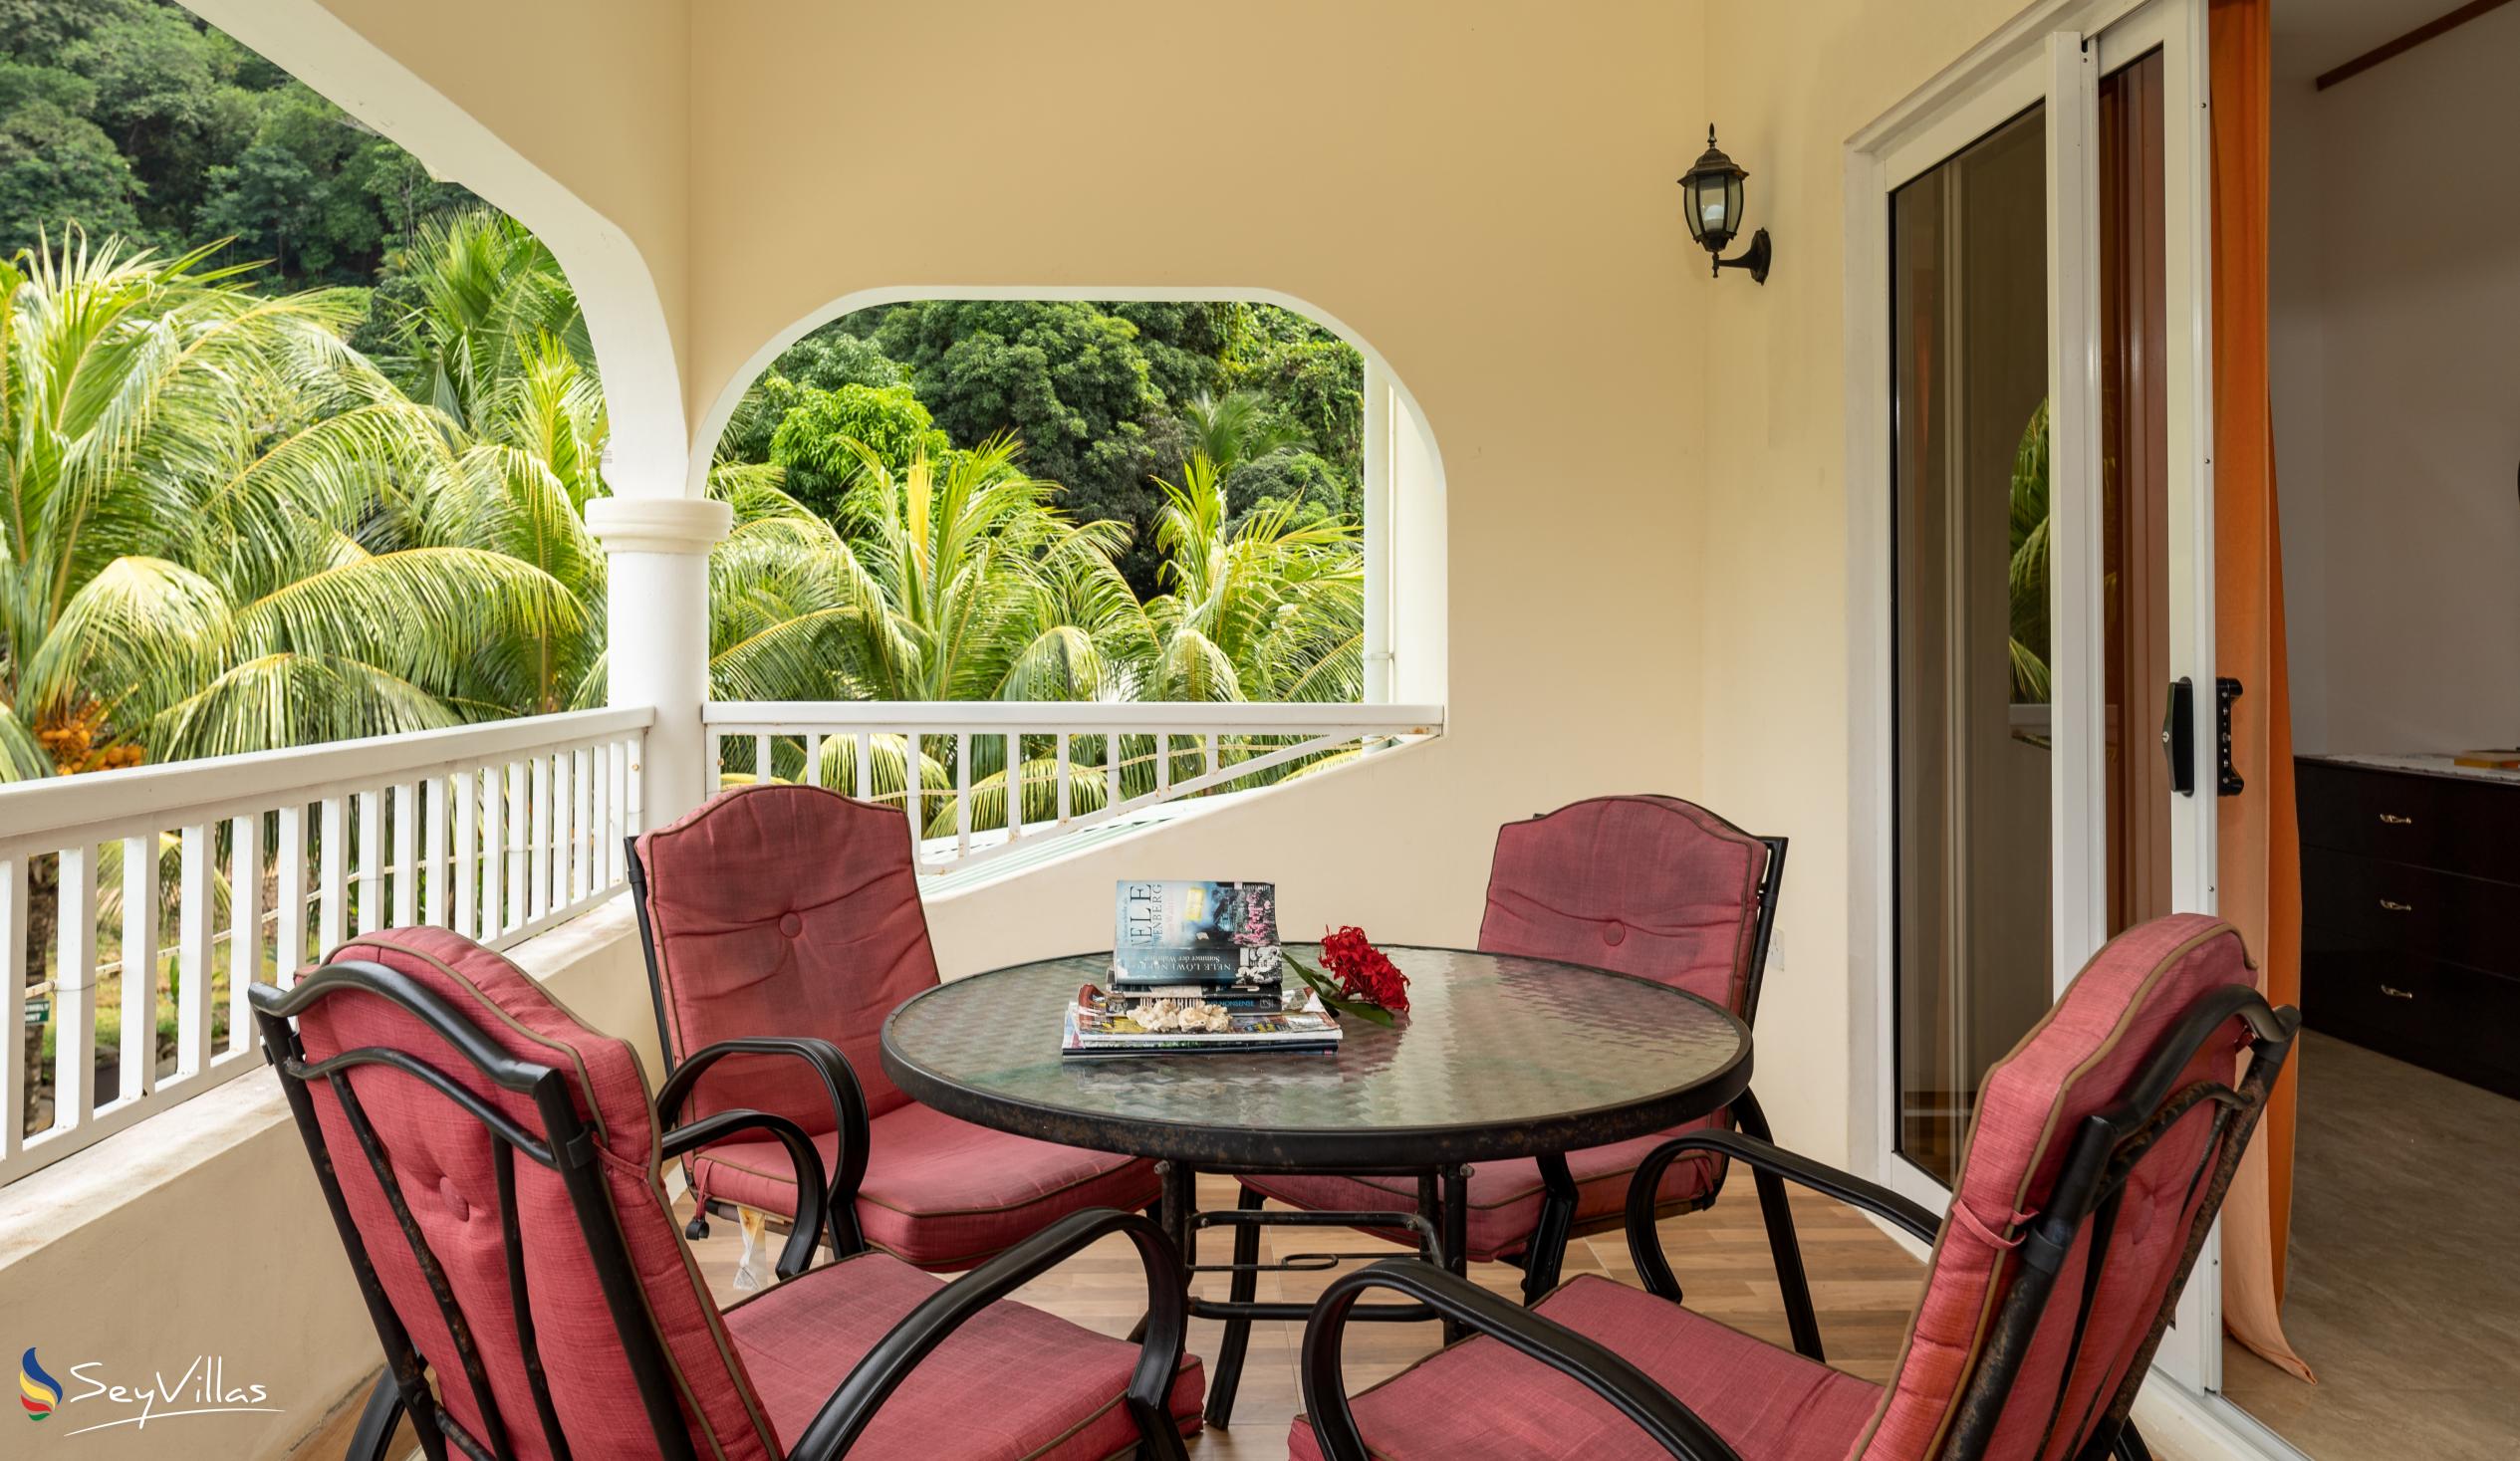 Foto 49: Julie's Holiday Home - Chambre double avec vue sur le jardin - Mahé (Seychelles)